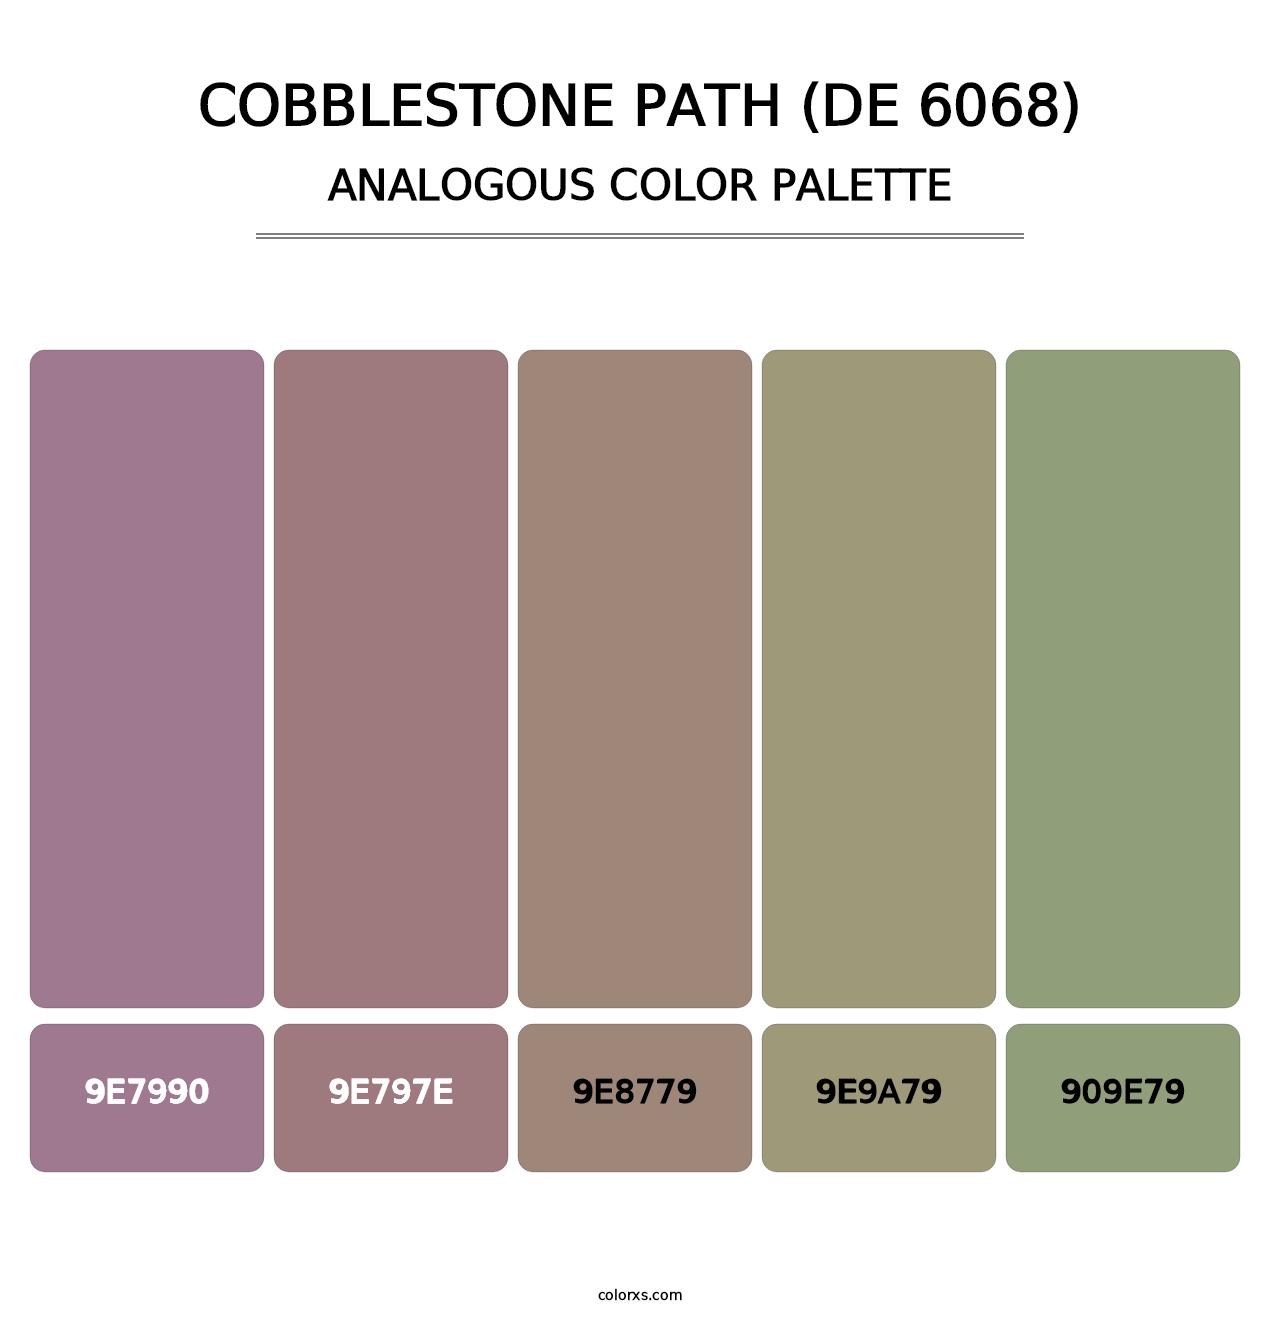 Cobblestone Path (DE 6068) - Analogous Color Palette